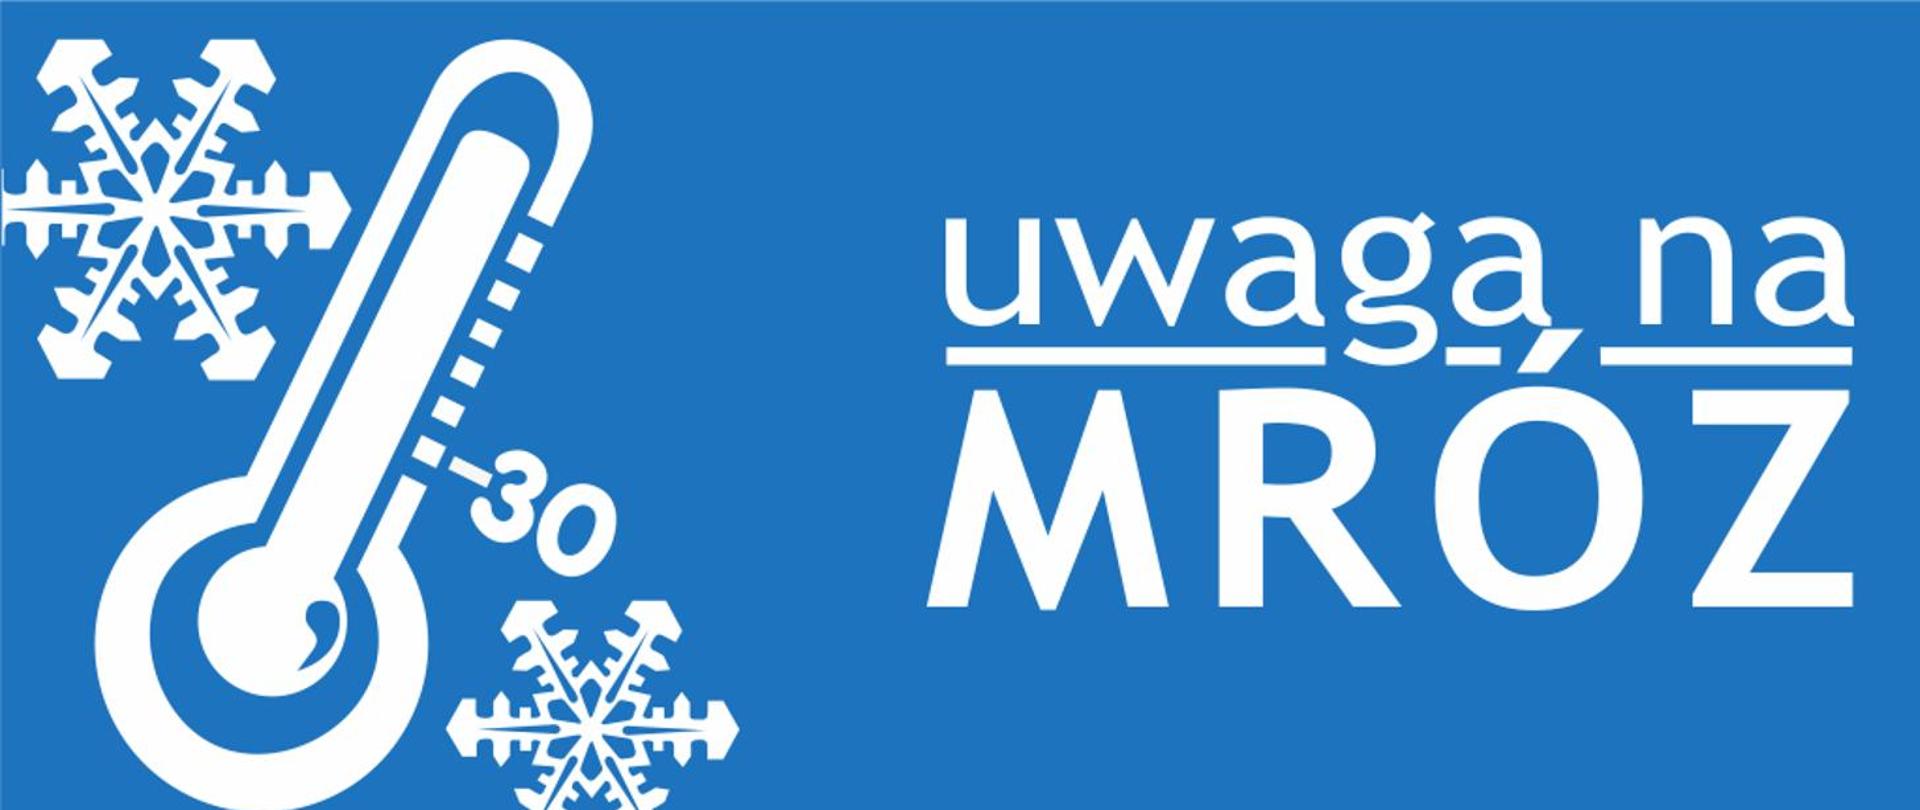 Grafika koloru białego ukazująca termometr oraz płatki śniegu z widocznym obok napisem "uwaga na MRÓZ" na niebieskim tle